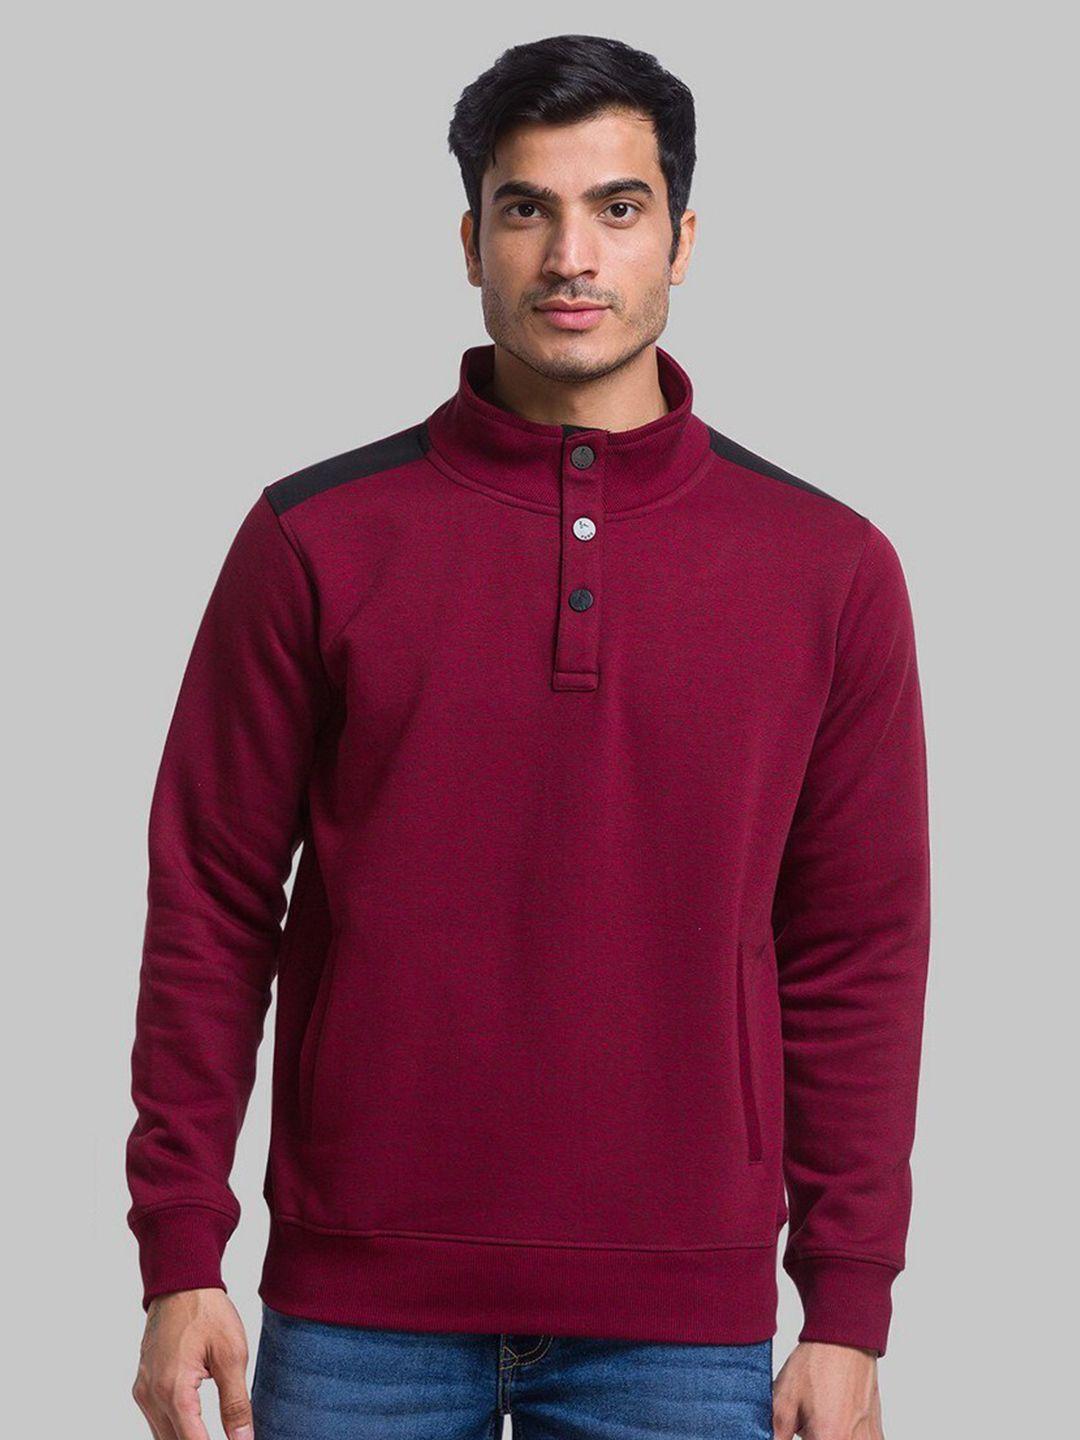 parx-men-red-solid-sweatshirt